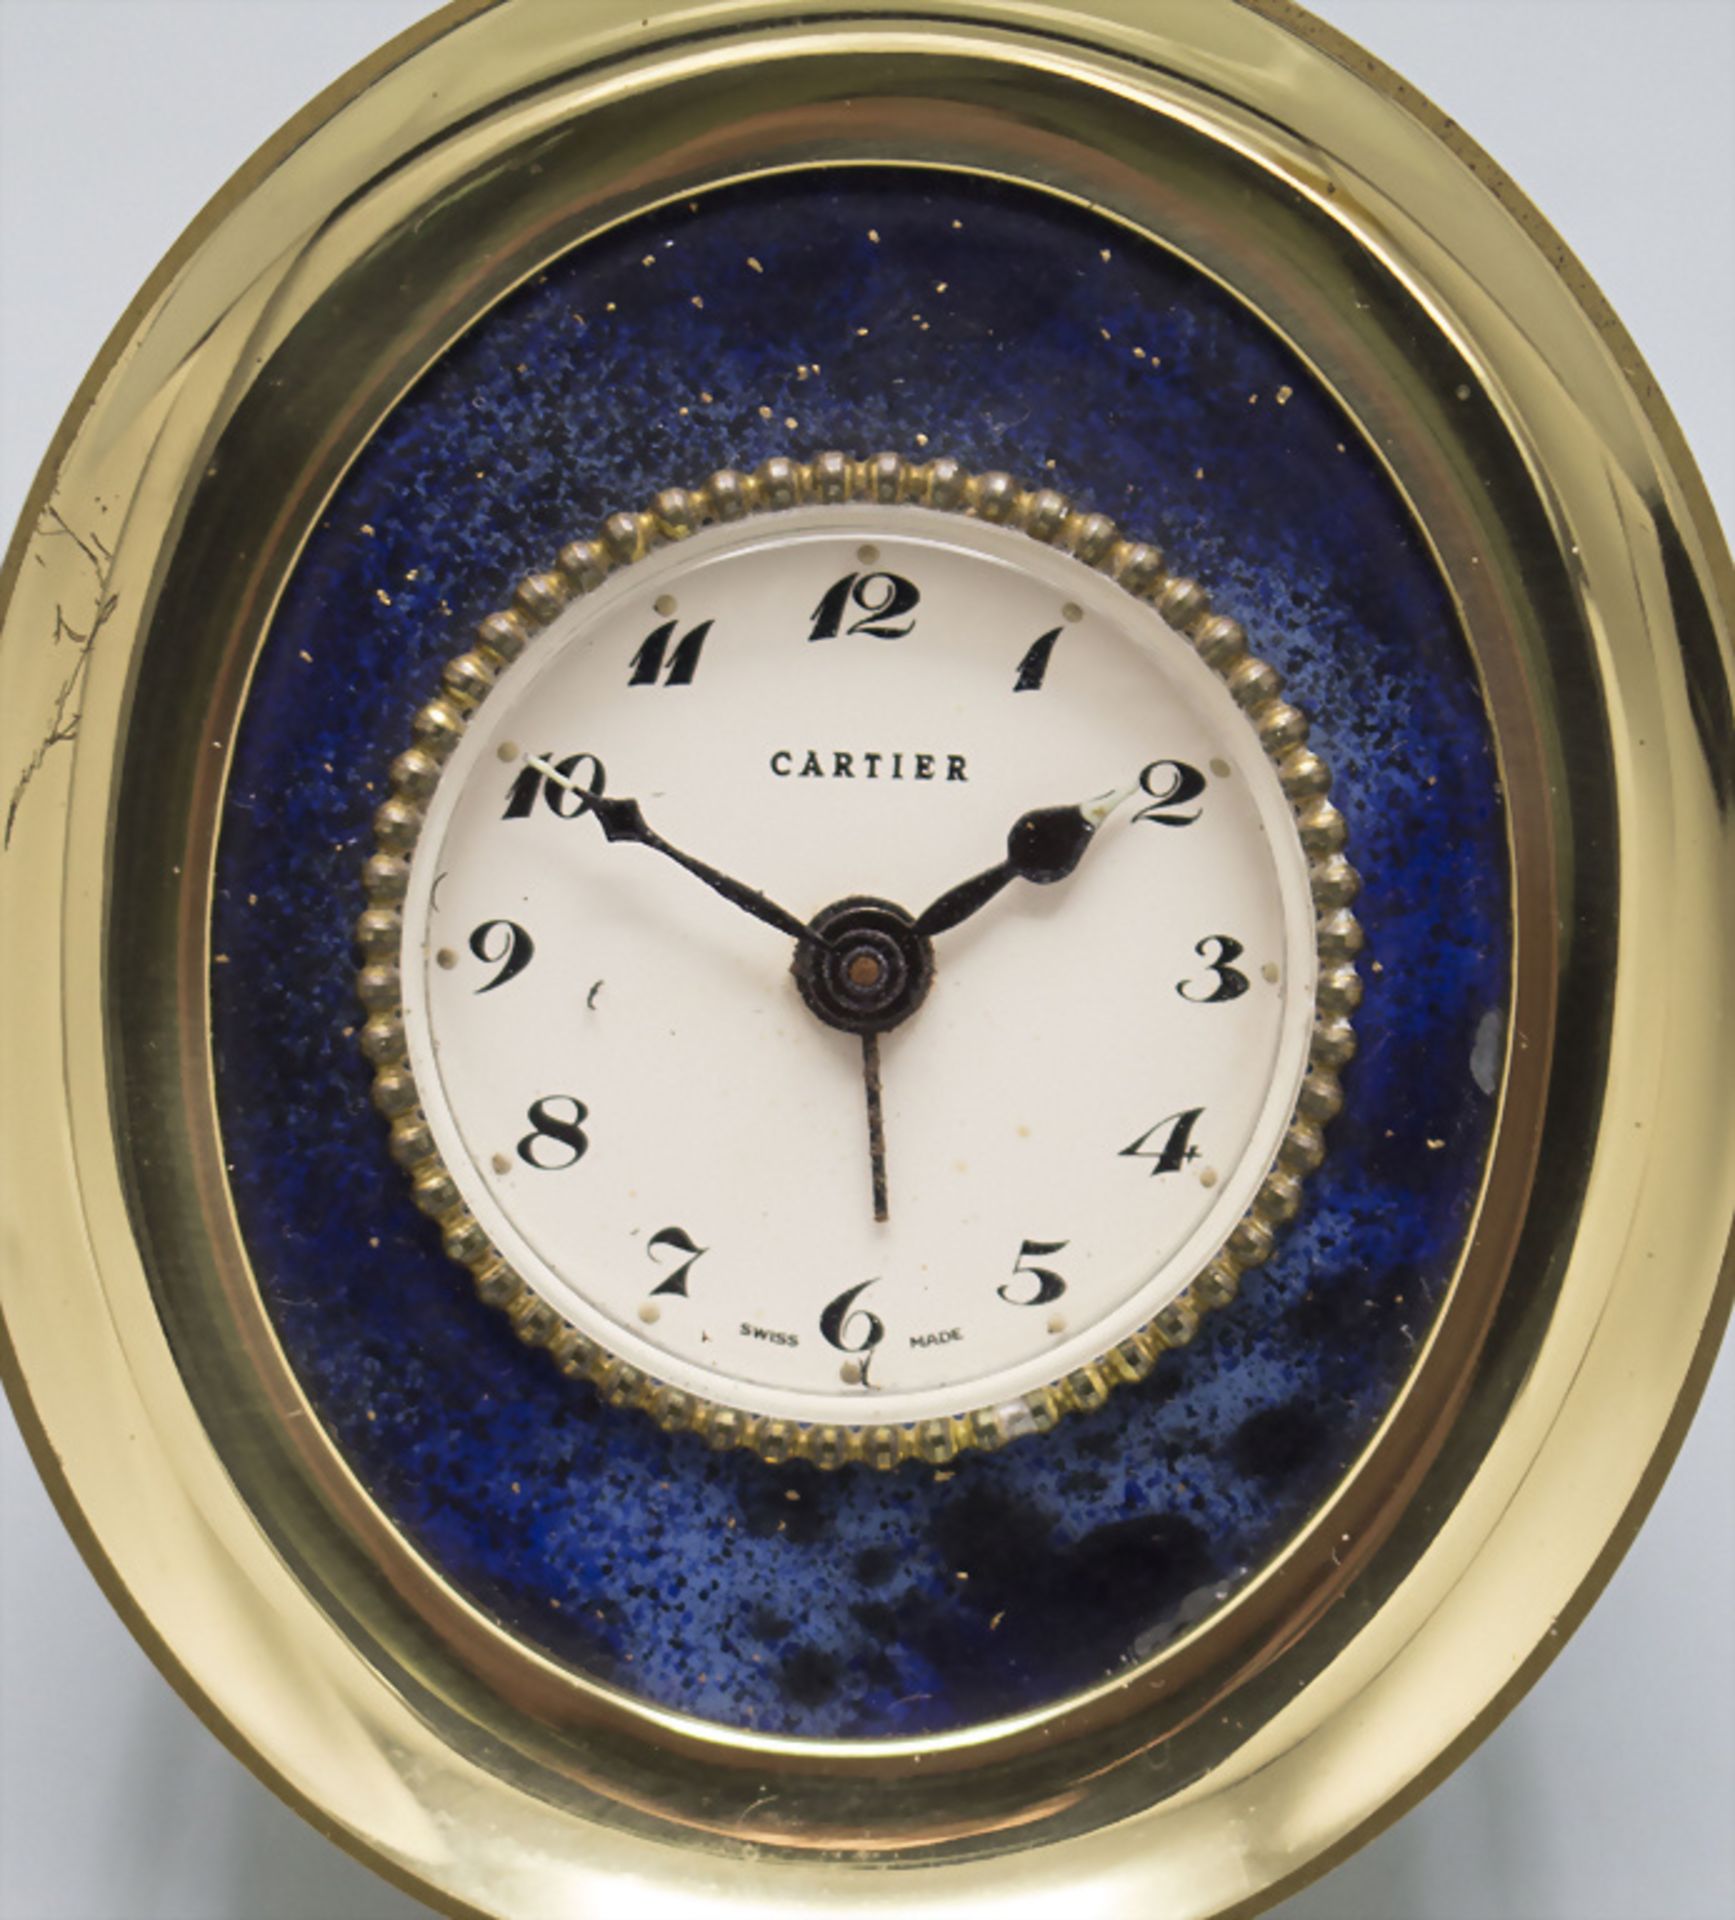 Tischuhr / A table clock, Cartier, Swiss / Schweiz, um 1960 - Image 2 of 4